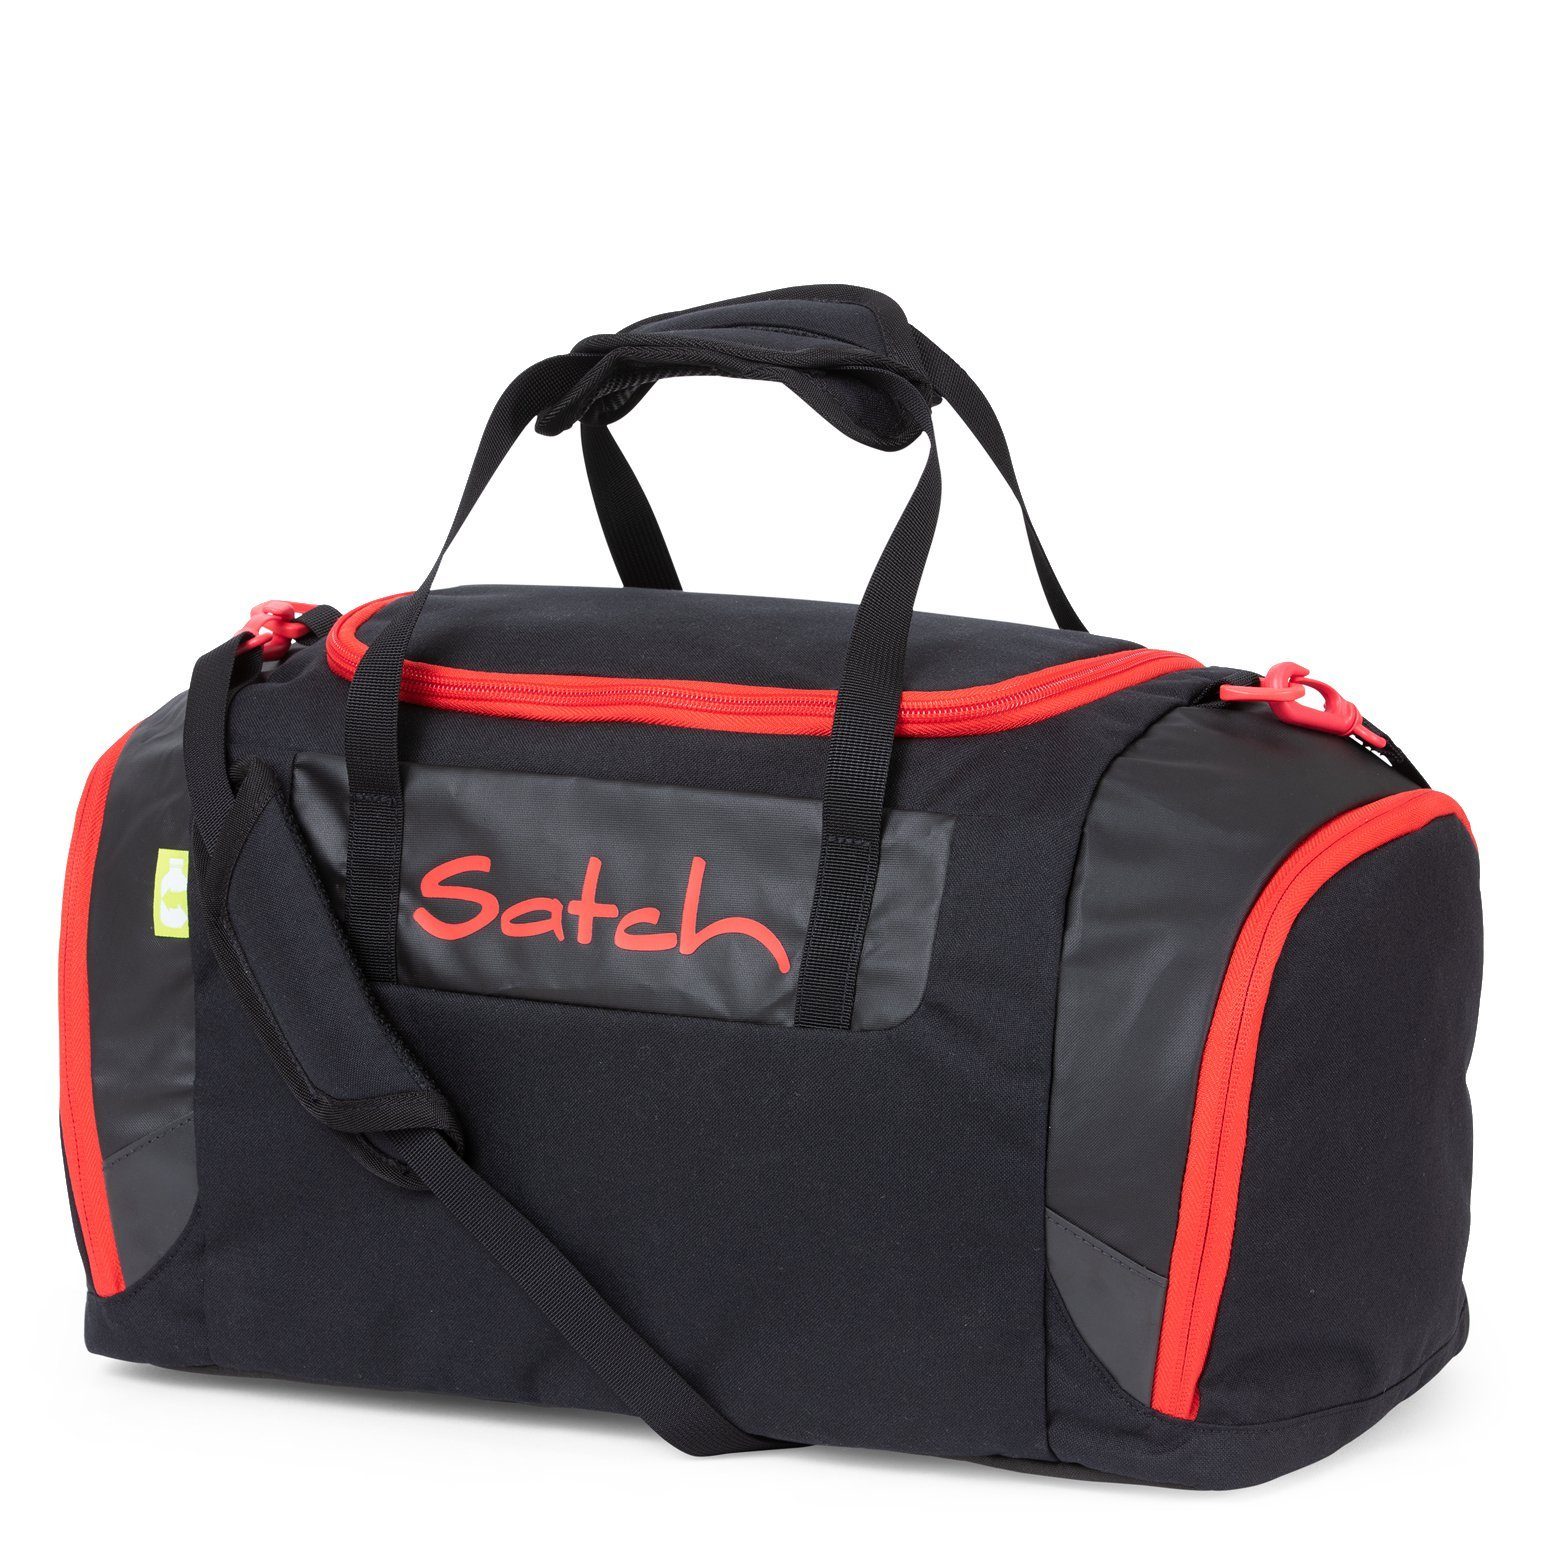 Satch Sporttasche Zubehör - Sporttasche 45 cm